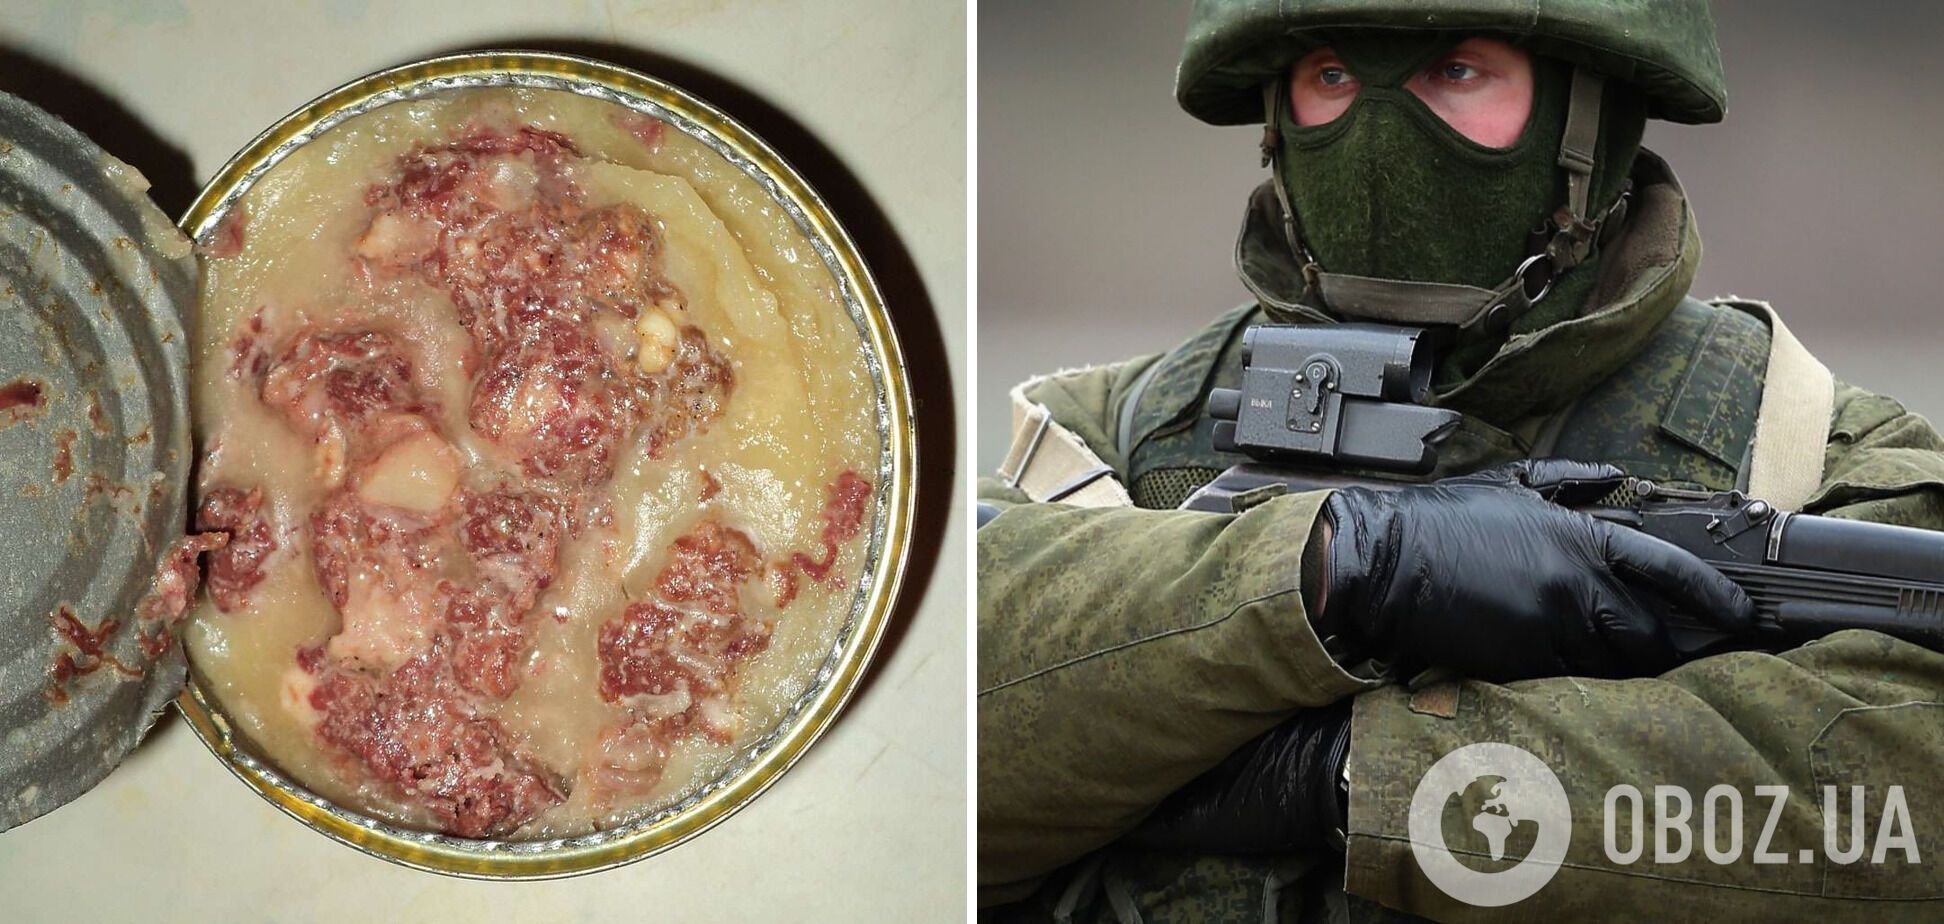 Оккупант пожаловался жене на отсутствие нормального питания в армии РФ